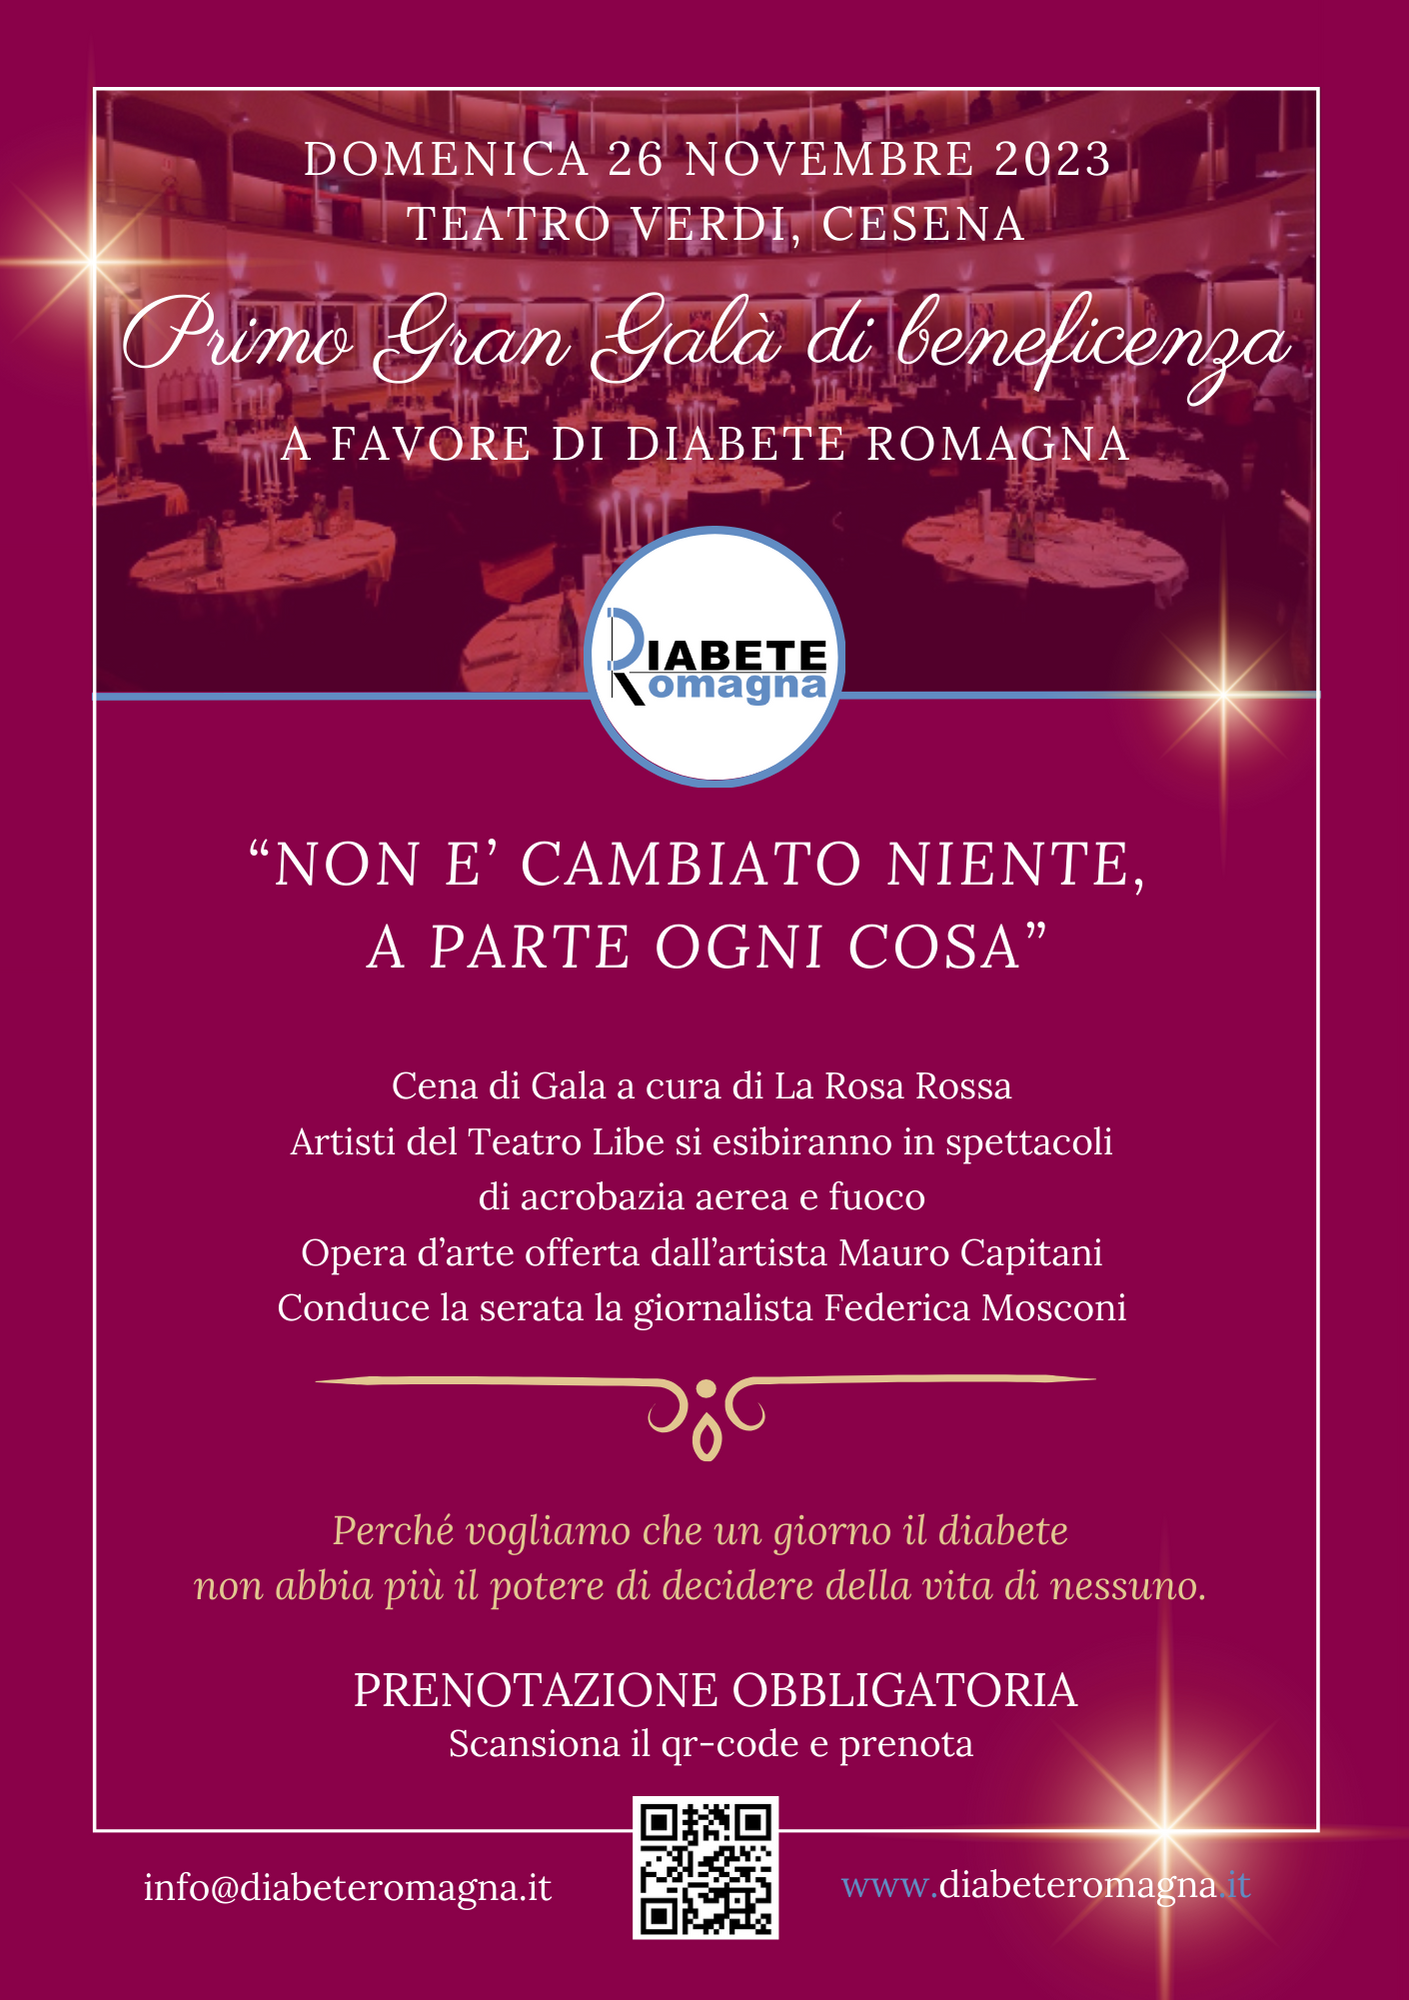 Domenica 26 Novembre Al Teatro Verdi Primo Gran Galà Di Diabete Romagna, “Non è Cambiato Niente, A Parte Ogni Cosa”